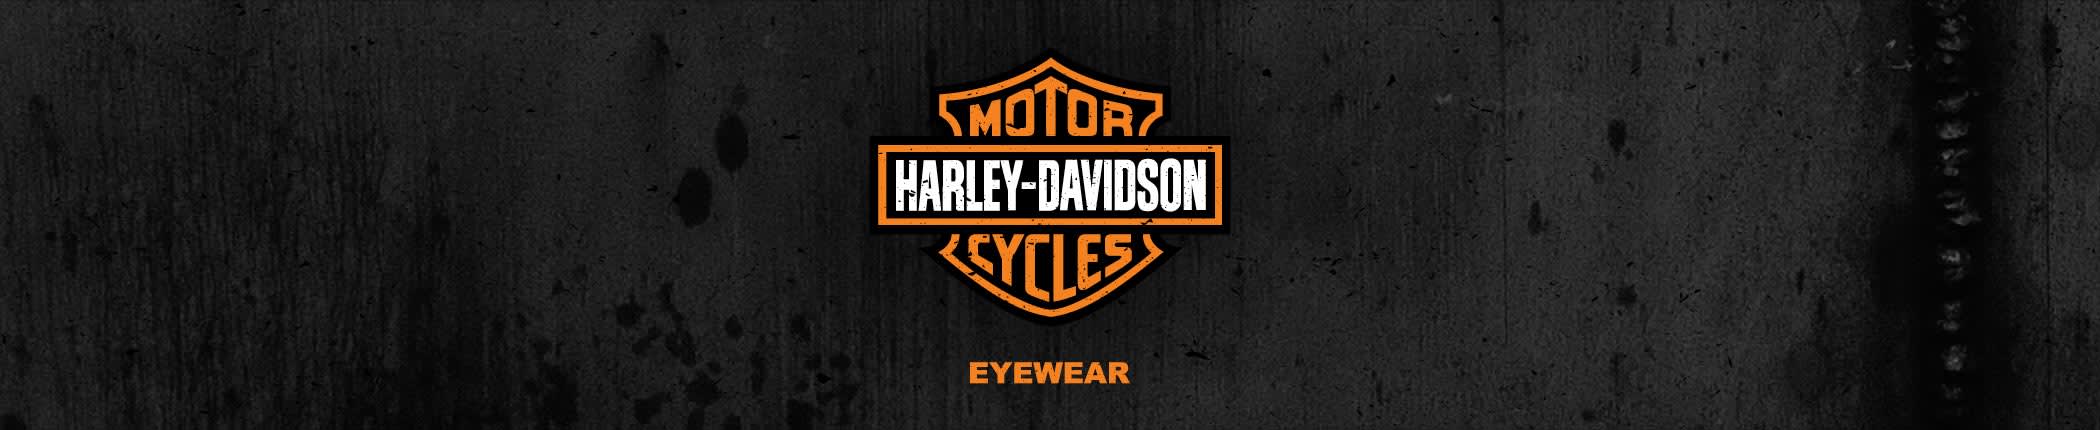 Shop Harley-Davidson Eyeglasses